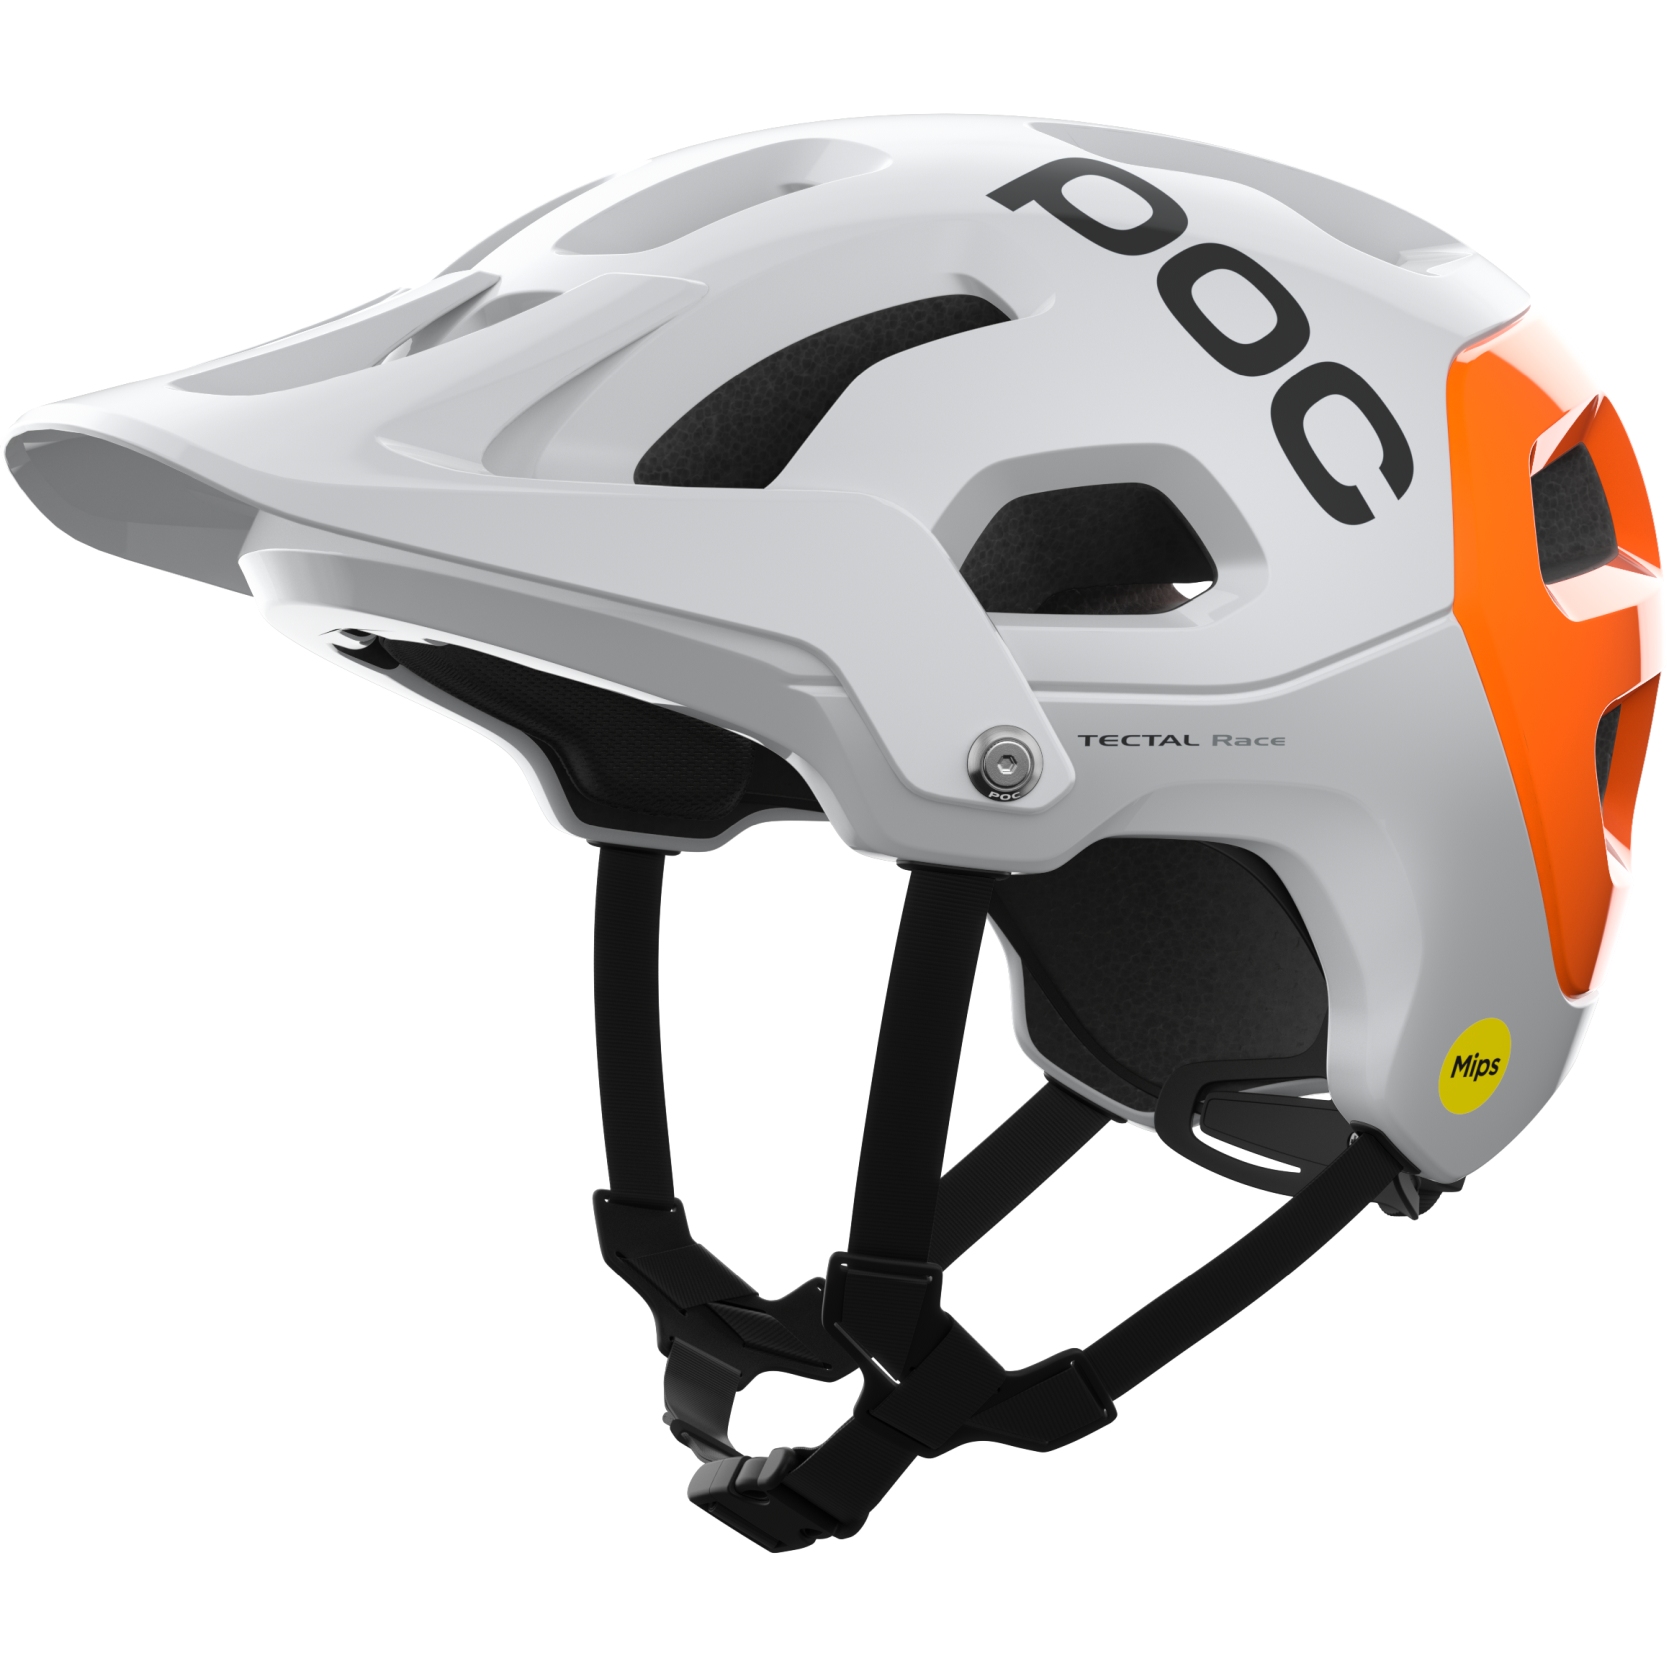 Produktbild von POC Tectal Race MIPS NFC Helm - 8043 hydrogen white/fluorescent orange avip